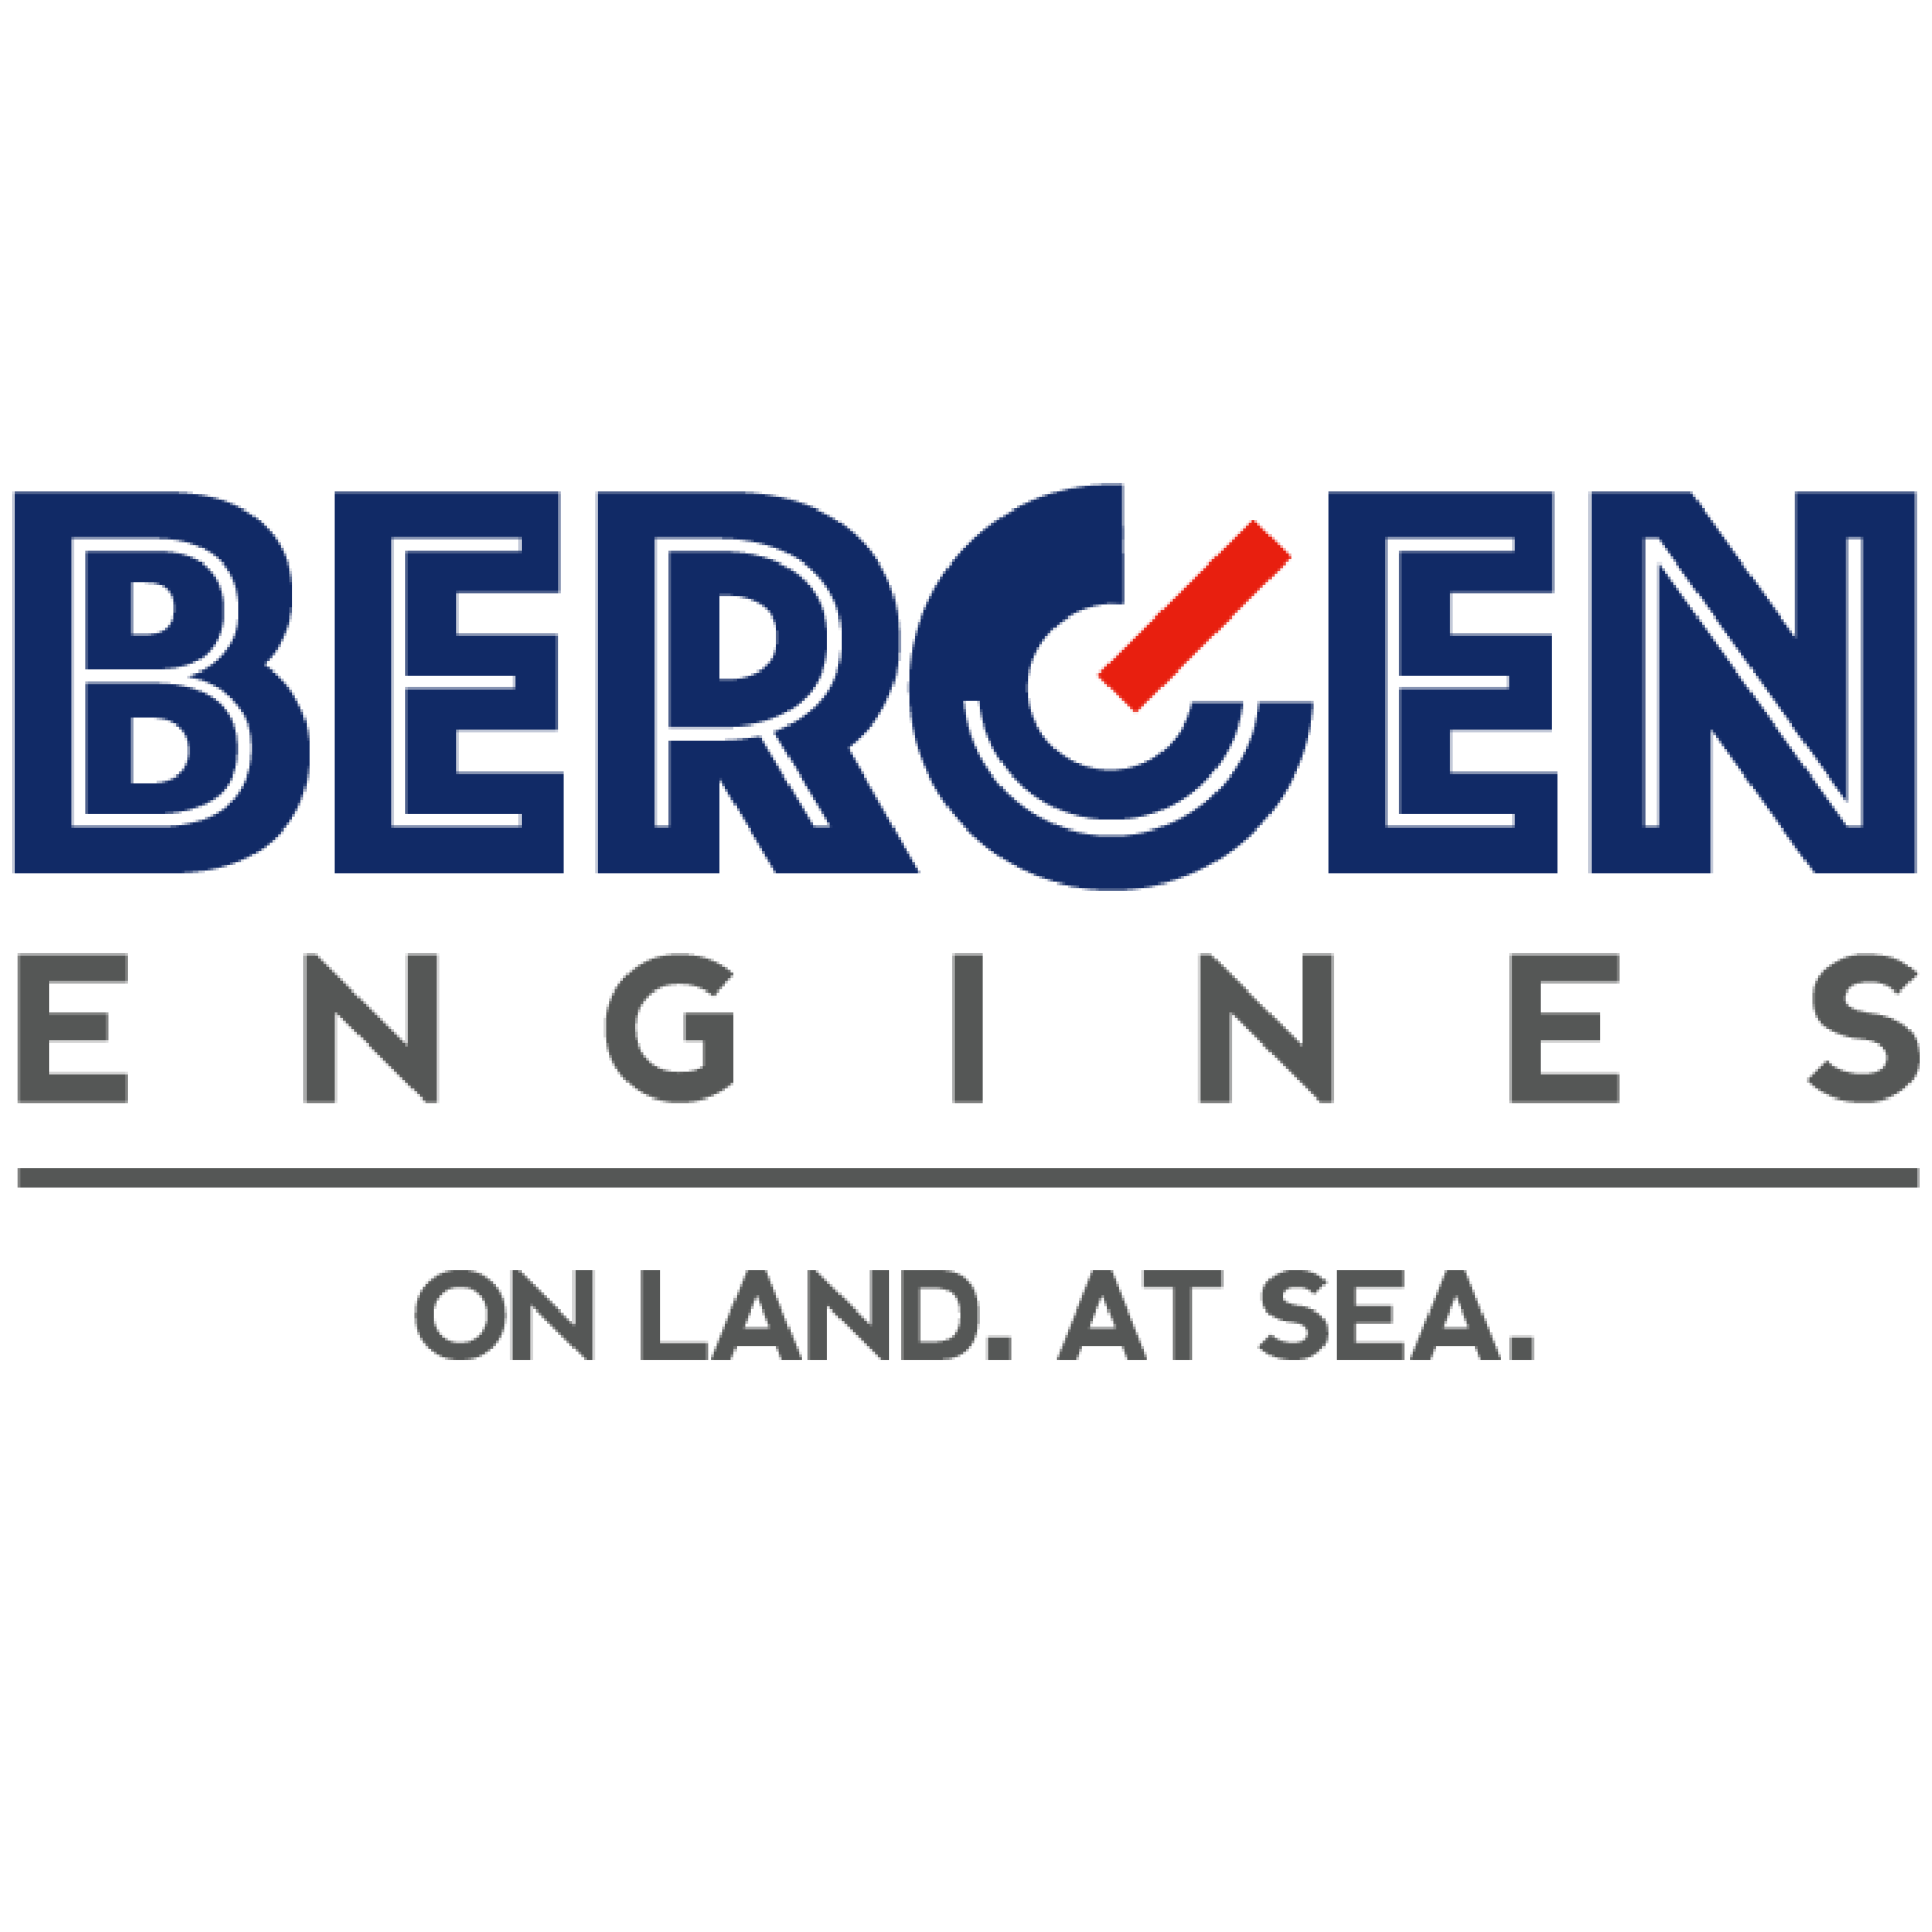 Bergen Engines